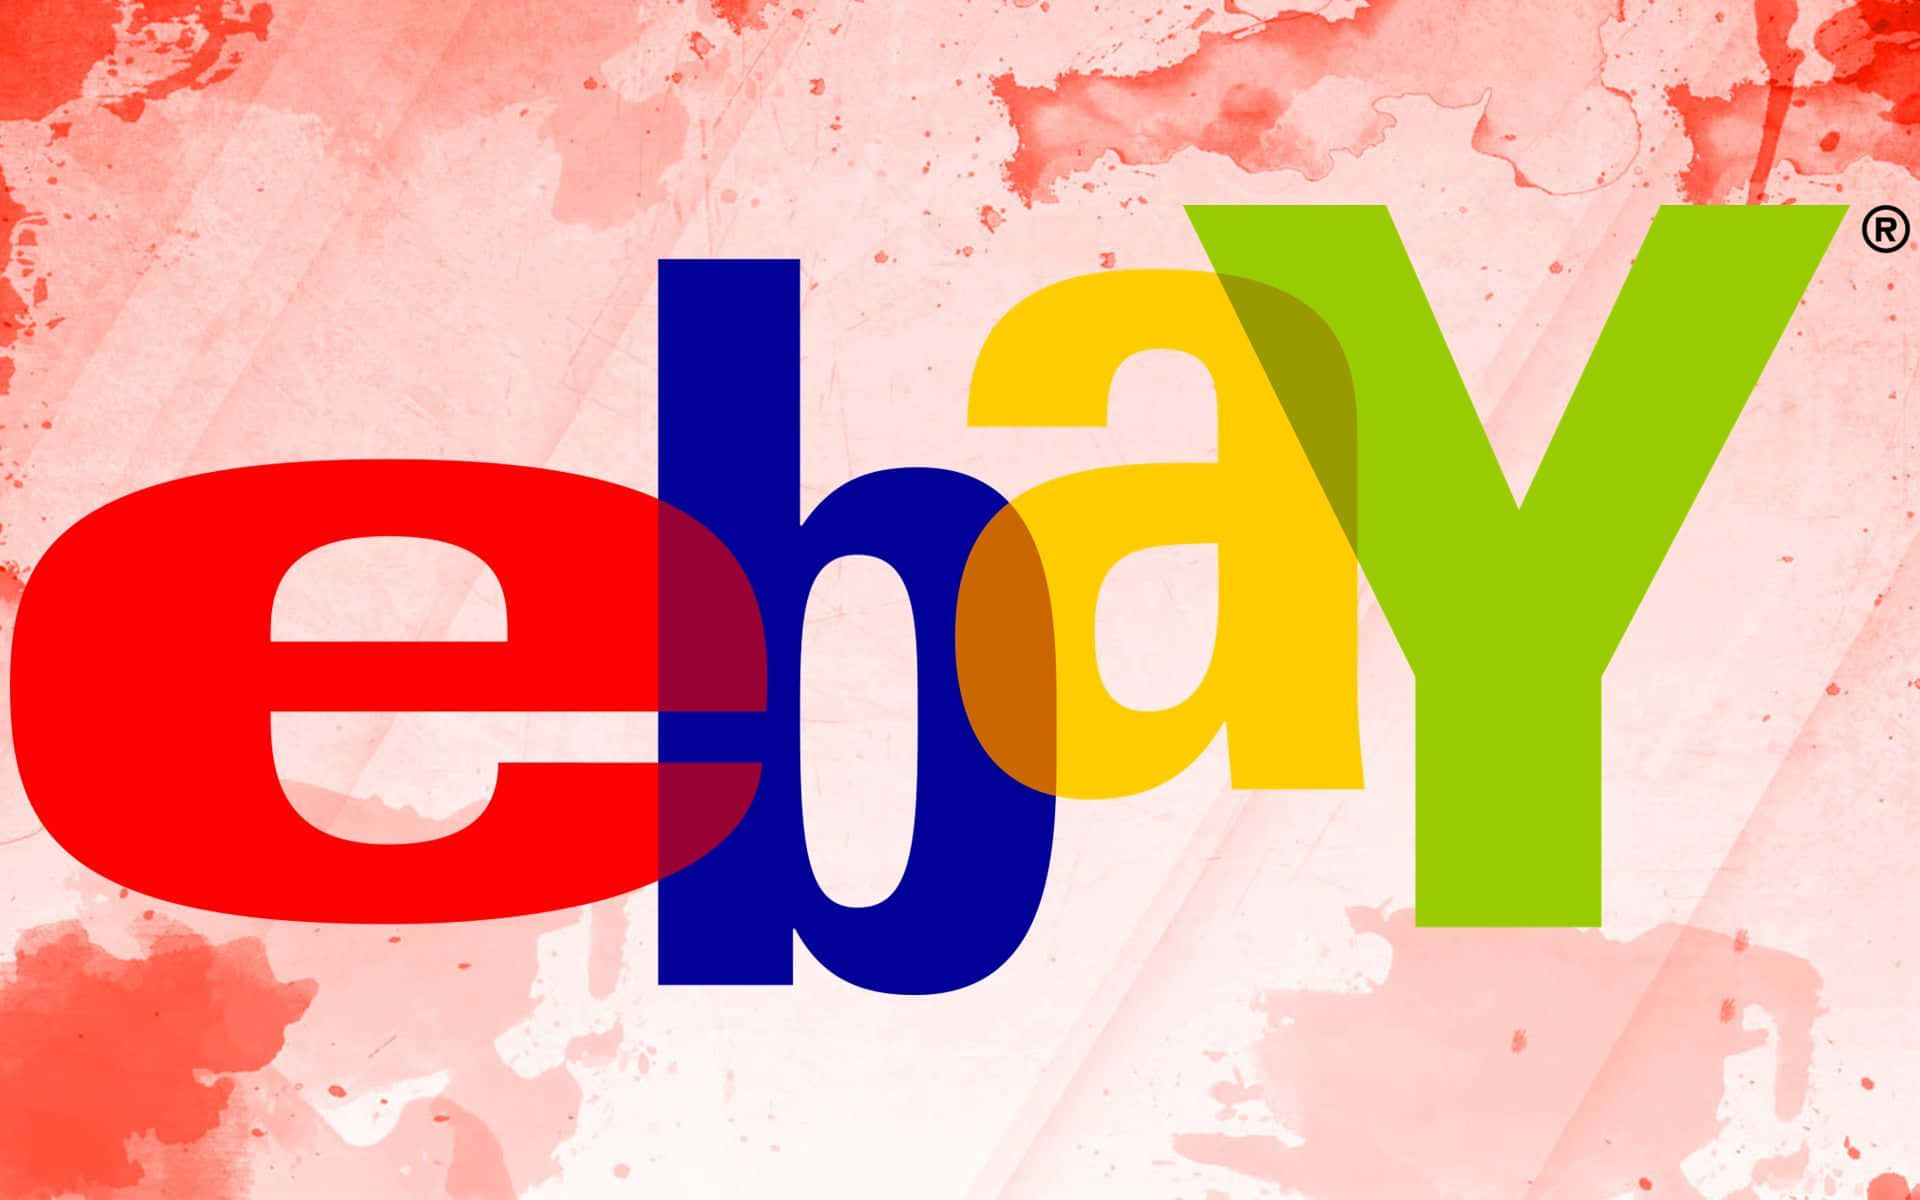 Logode Ebay Uk Contra Un Fondo Abstracto Rojo. Fondo de pantalla